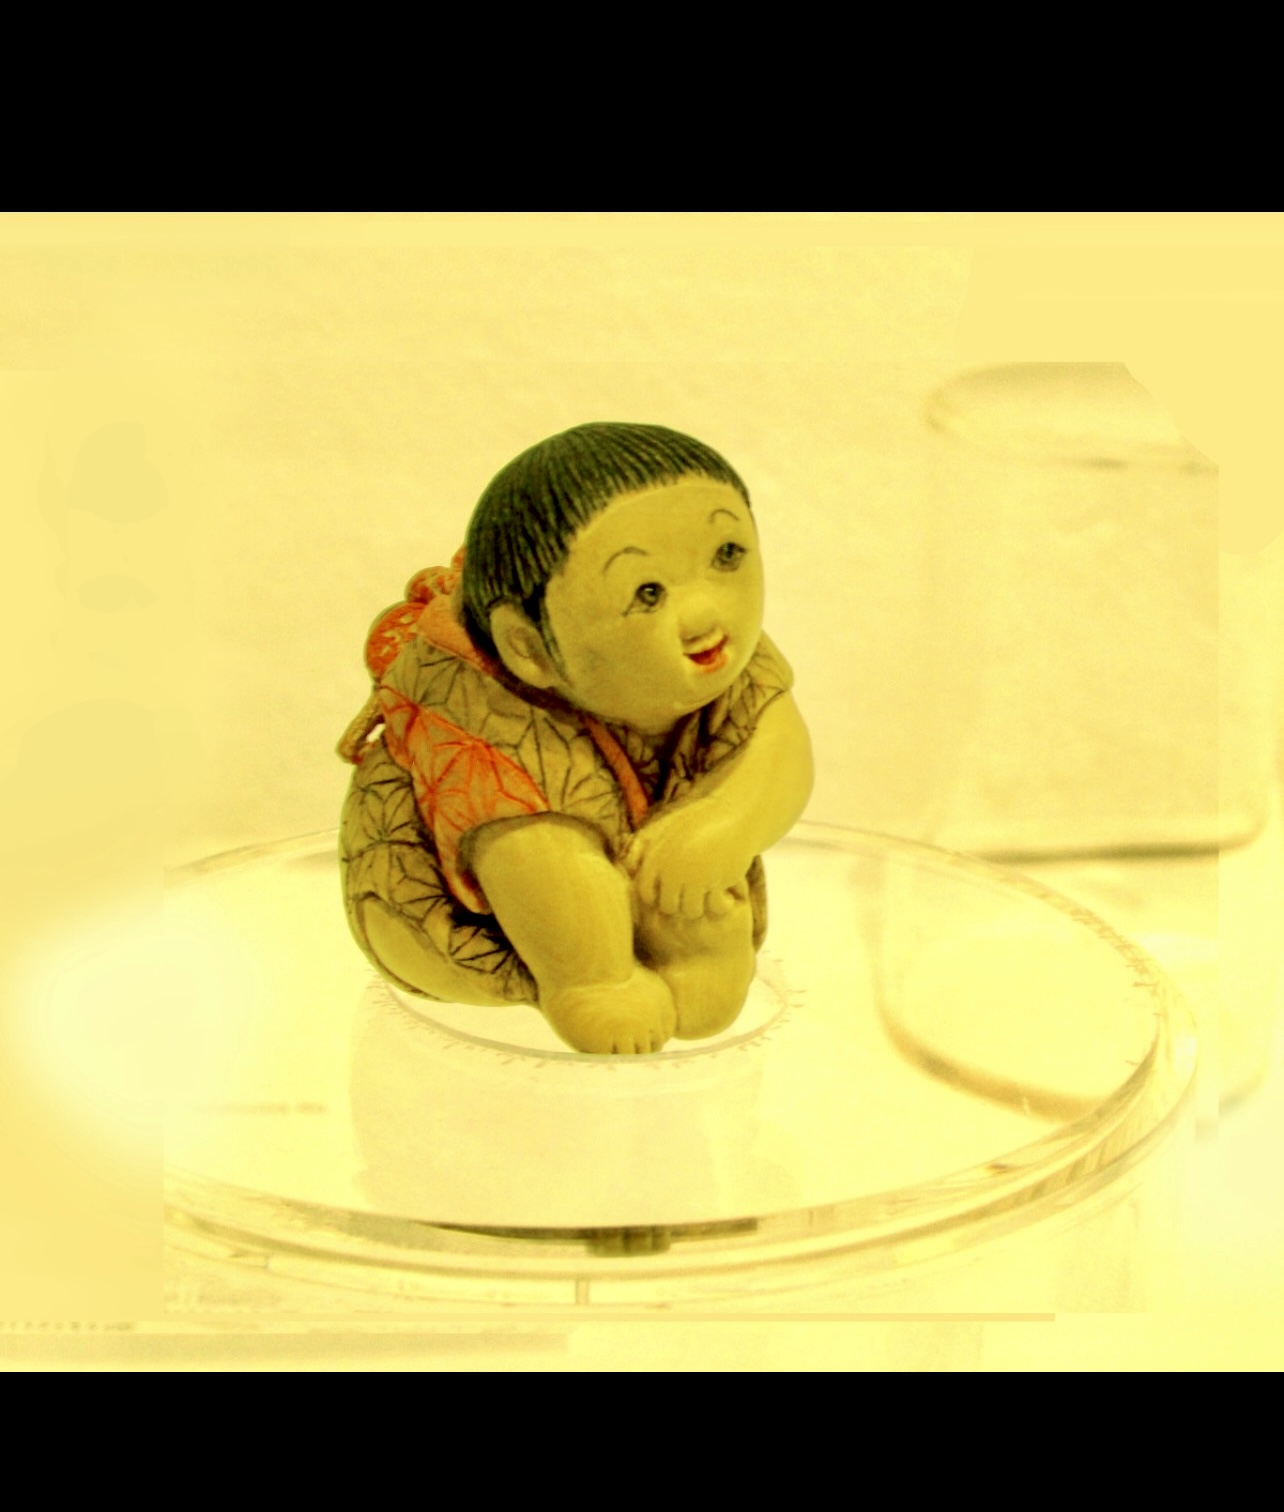 Une figurine miniature Netsuke représentant un bébé assis sur un verre.